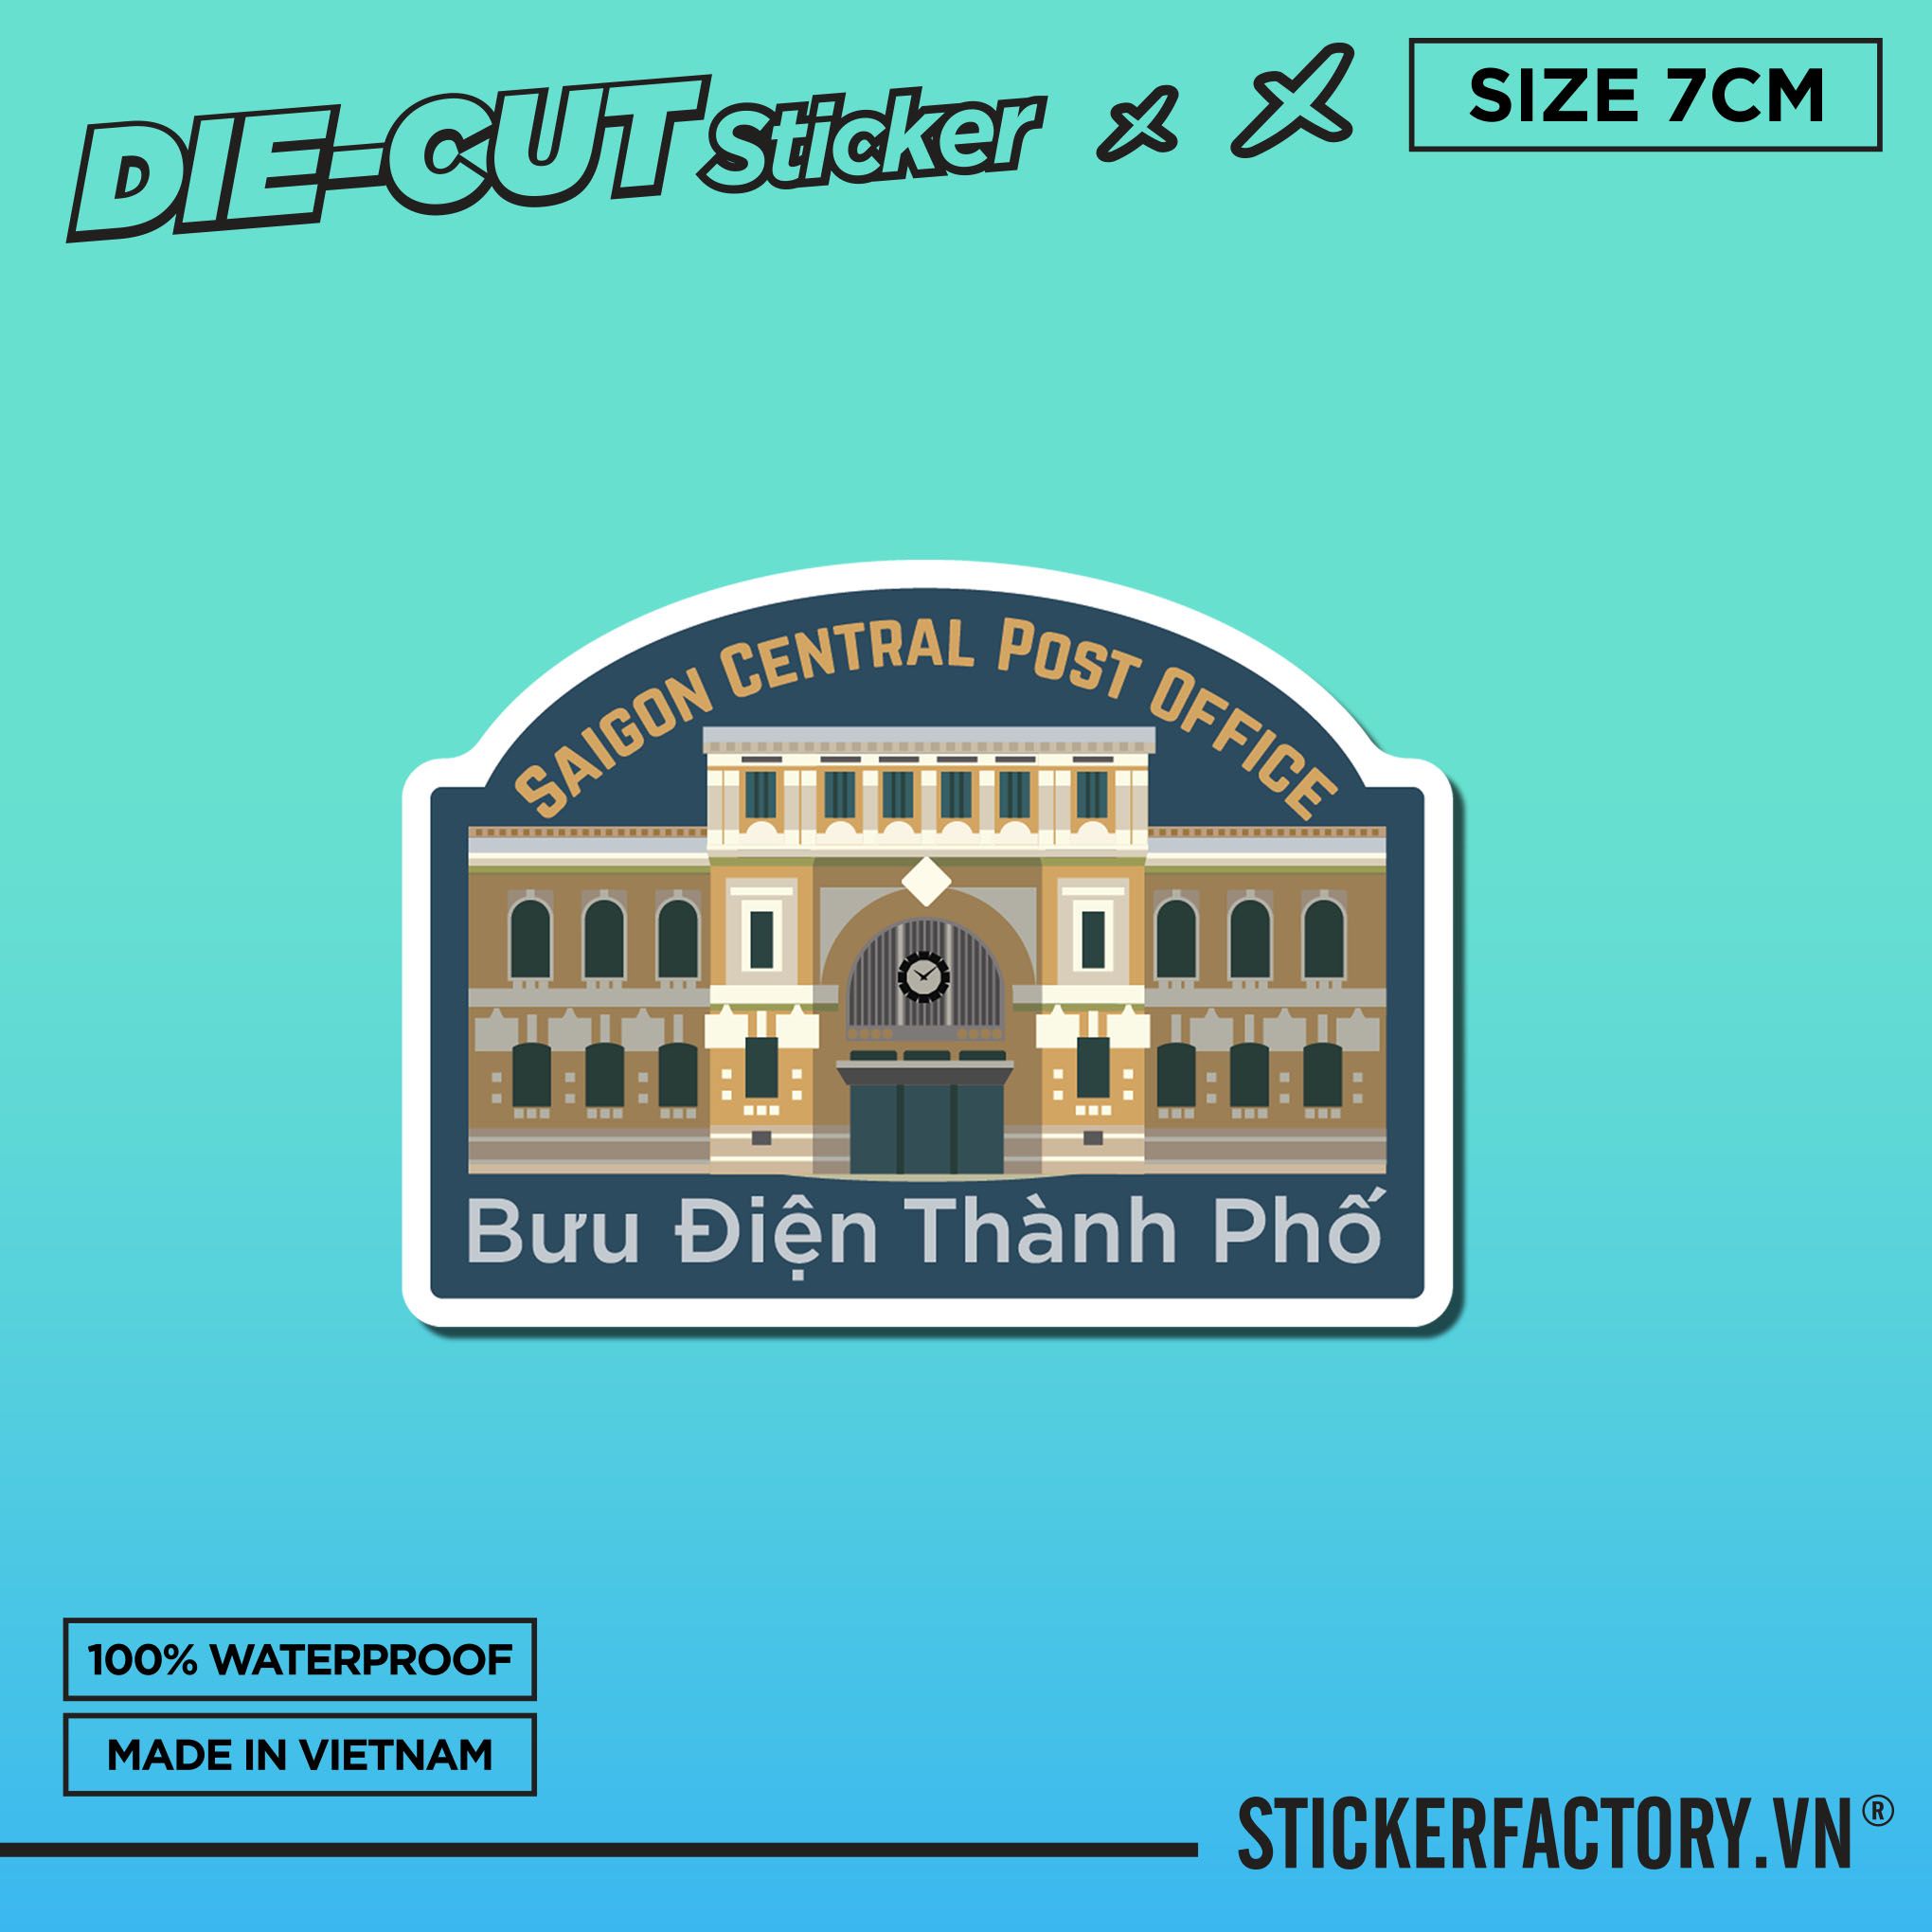 BƯU ĐIỆN THÀNH PHỐ HỒ CHÍ MINH - Sticker Die-cut hình dán cắt rời